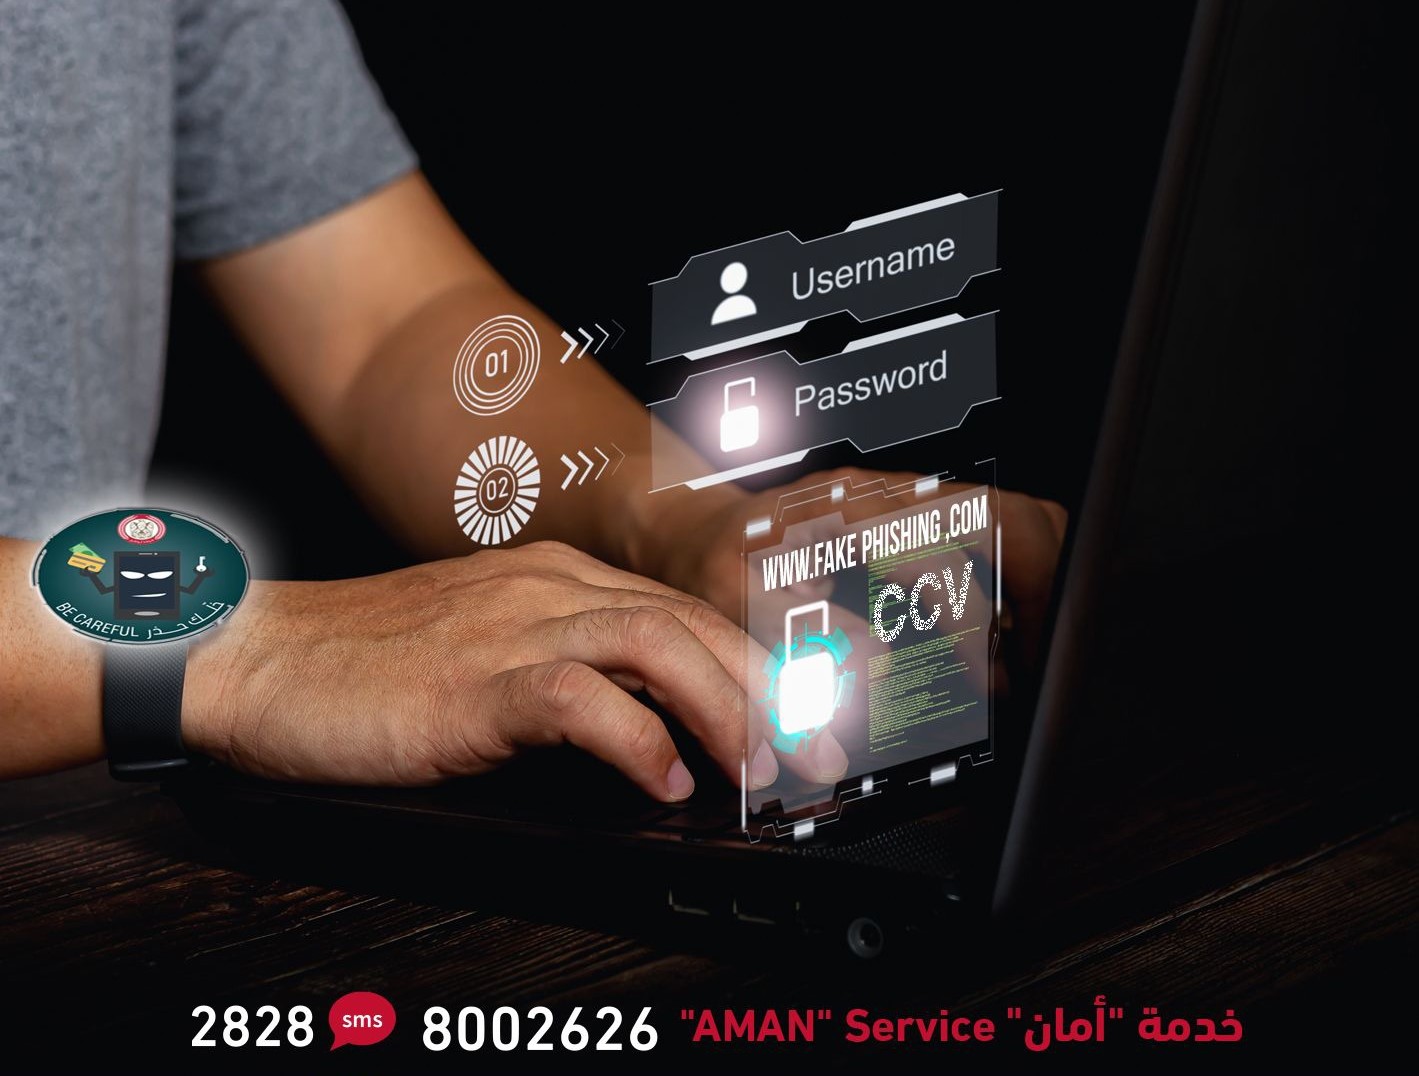 شرطة أبوظبي تحذر من روابط إلكترونية احتيالية تقدم إغراءات وهمية وتستغل المناسبات والأحداث